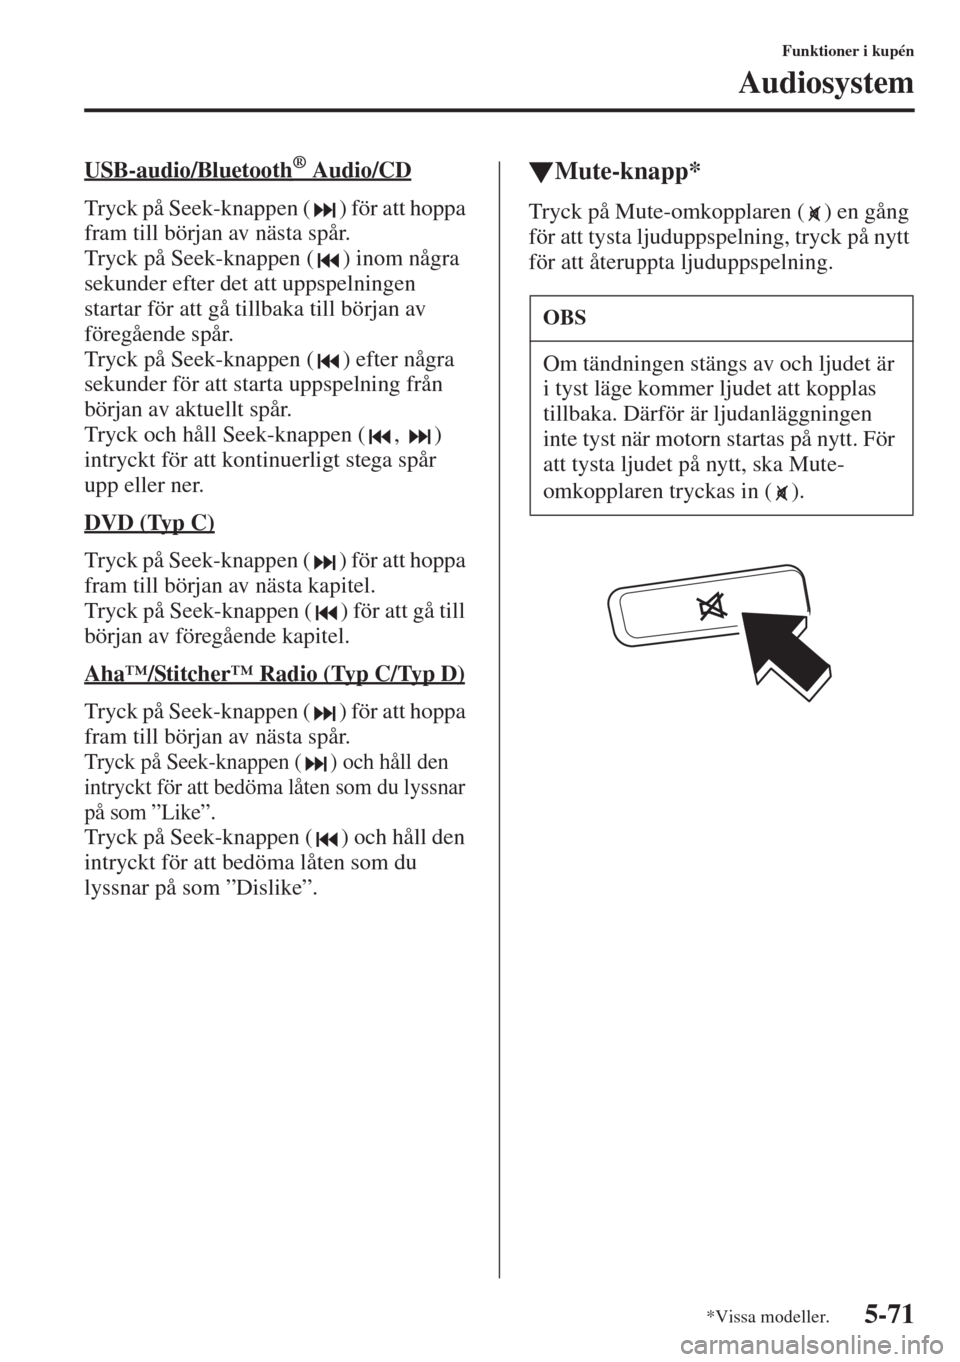 MAZDA MODEL 6 2015  Ägarmanual (in Swedish) 5-71
Funktioner i kupén
Audiosystem
USB-audio/Bluetooth®        Audio/CD
Tryck på Seek-knappen ( ) för att hoppa 
fram till början av nästa spår.
Tryck på Seek-knappen ( ) inom några 
sekunde